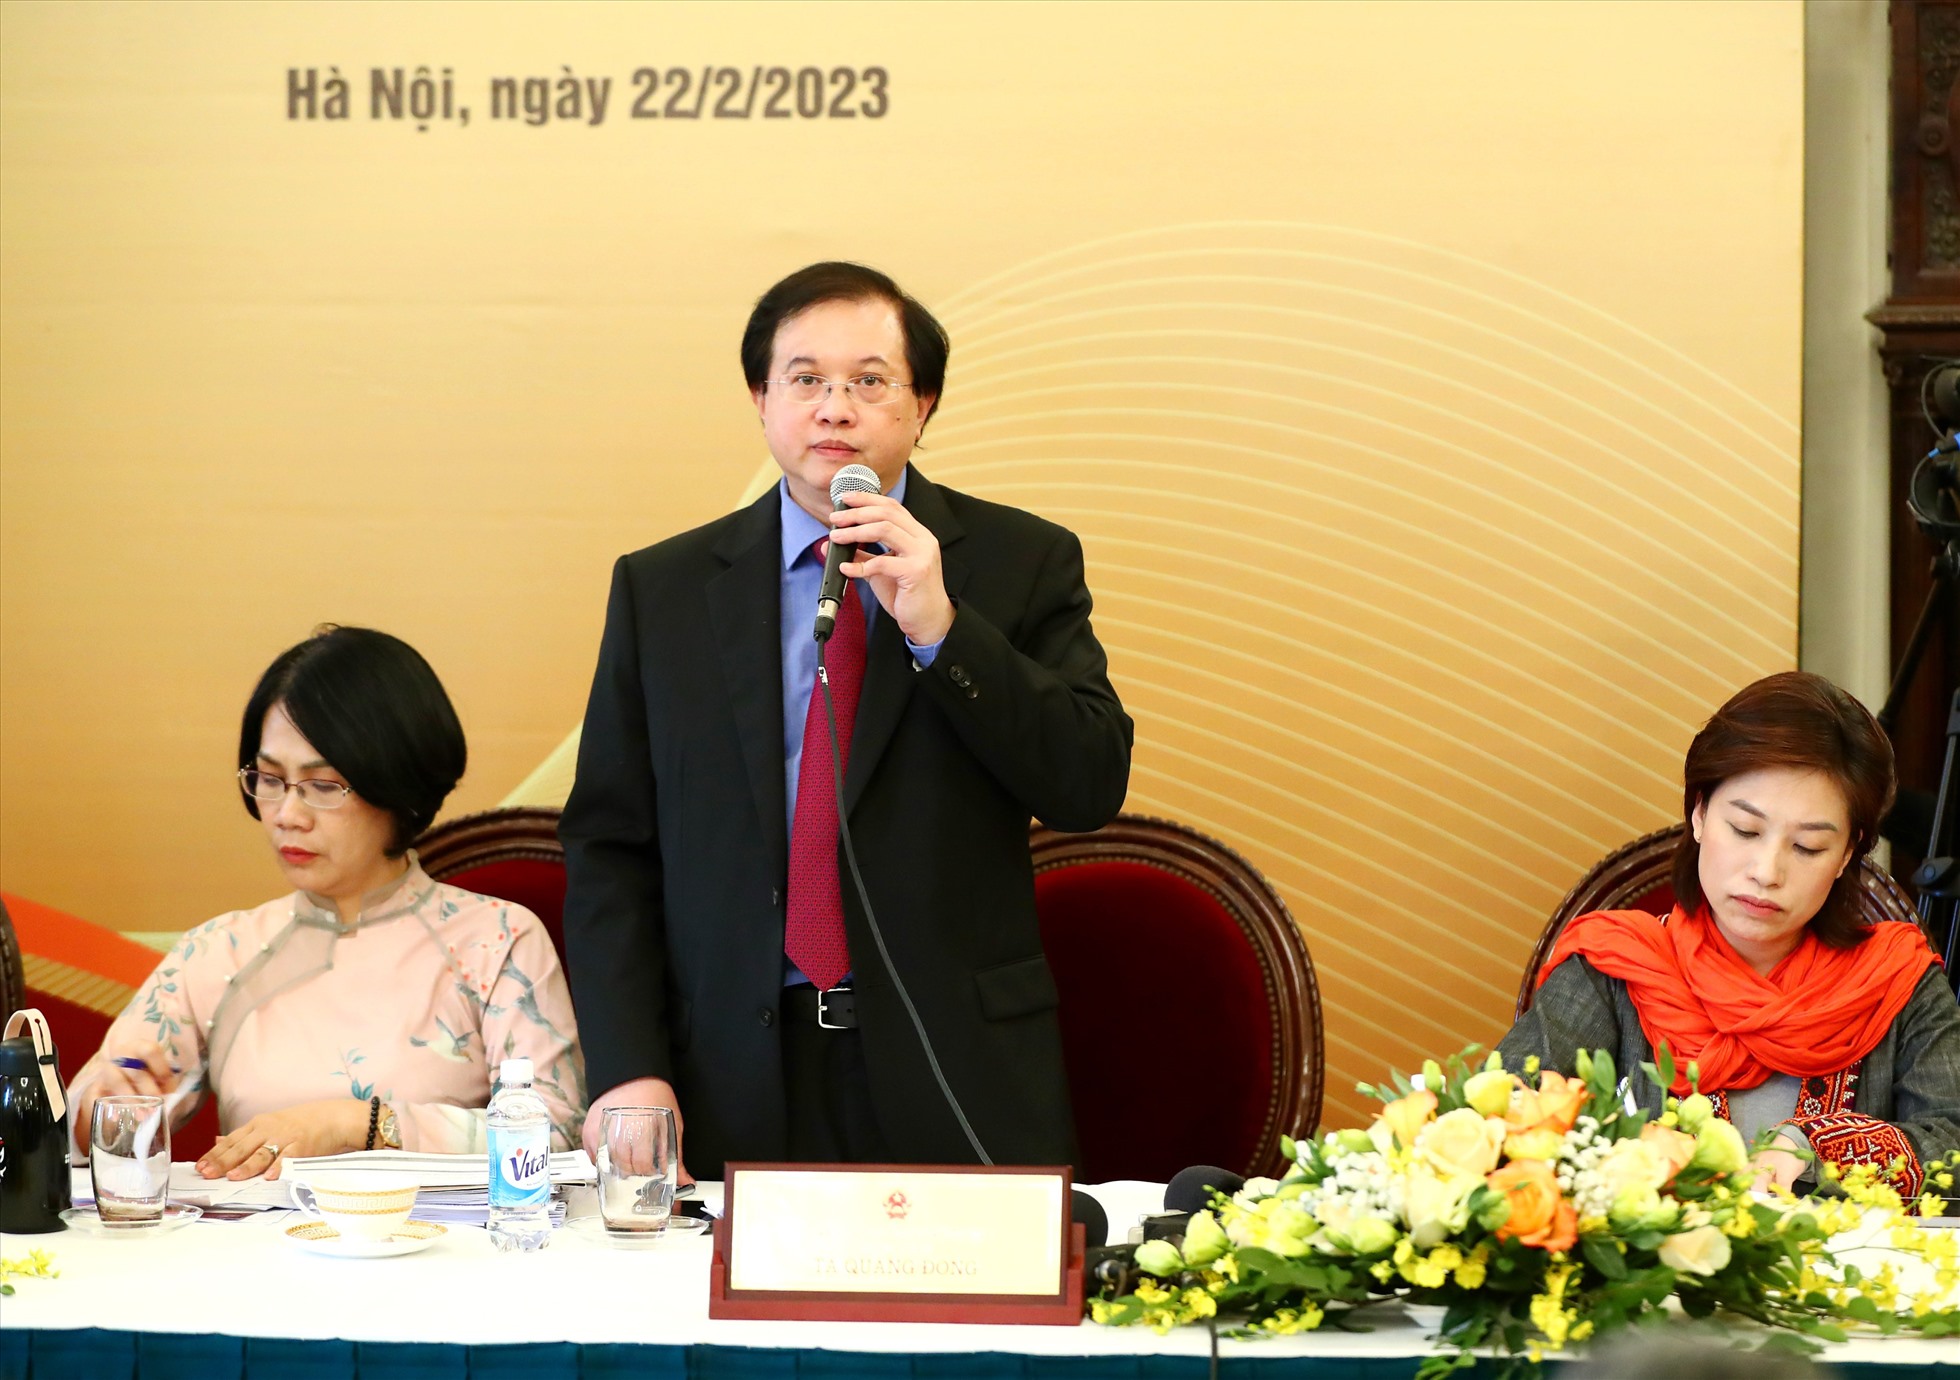 Thứ trưởng Bộ VH,TT&DL Tạ Quang Đông phát biểu tại sự kiện họp báo tuyên truyền các sự kiện, hoạt động kỷ niệm 80 năm ra đời Đề cương về văn hóa Việt Nam. Ảnh: Trần Huấn